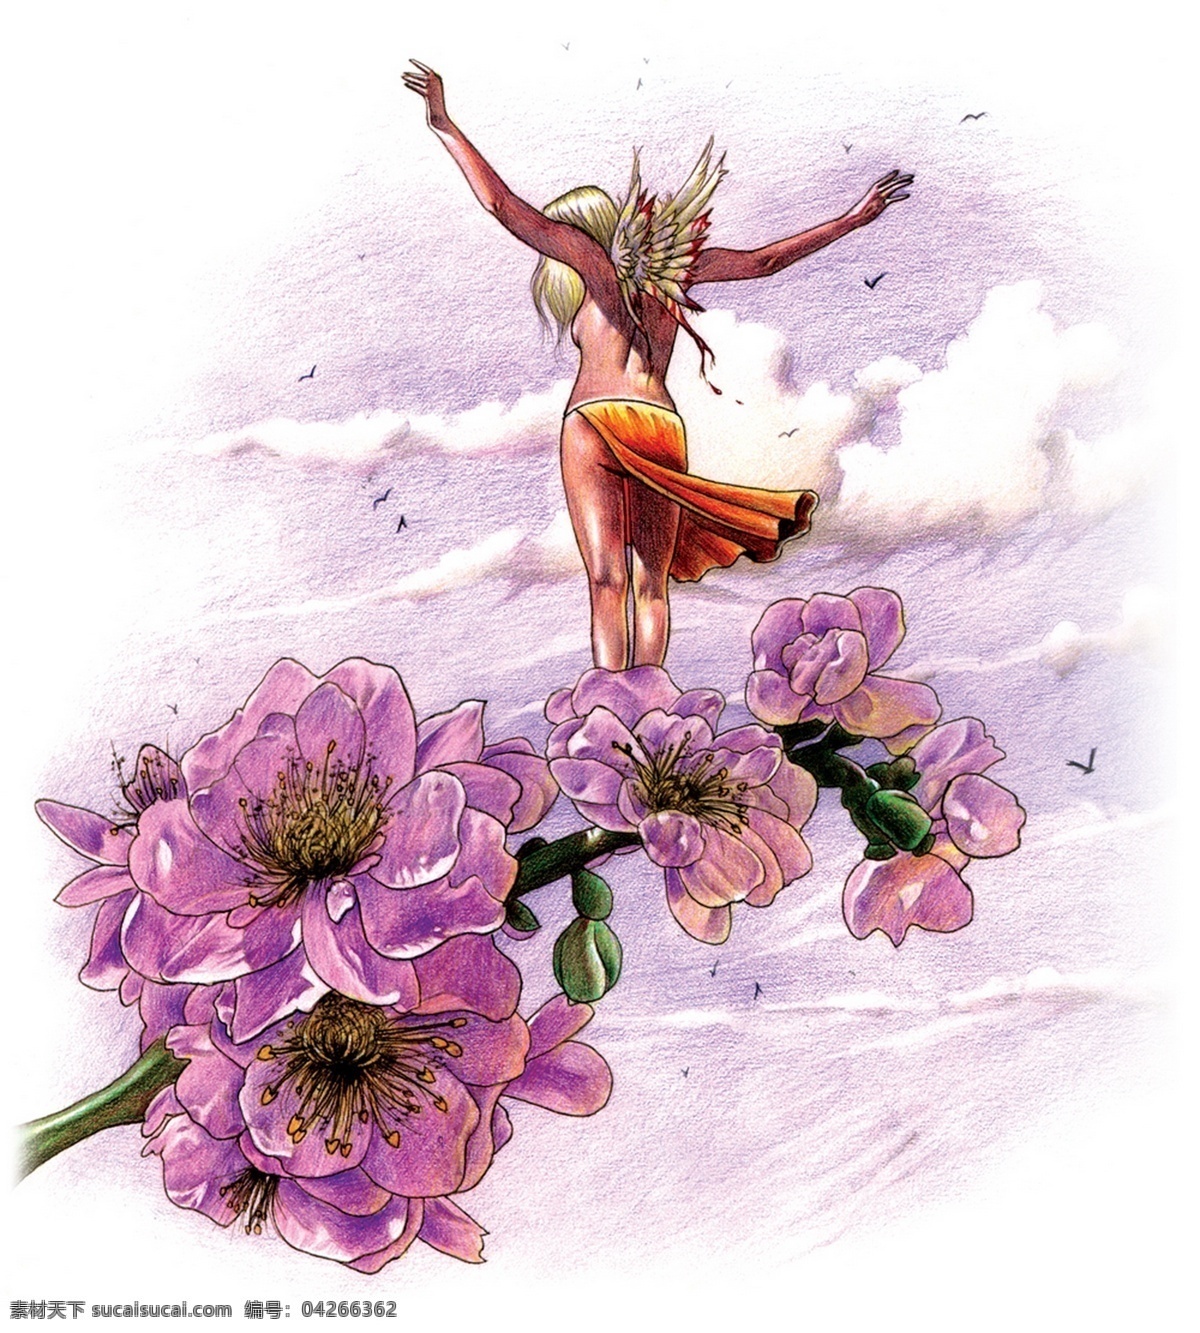 插画 插图 翅膀 动漫 动漫动画 动漫人物 花 精灵 花枝上的仙女 仙女 天使 鸟 欧洲 神话 童话 童话艺术图典